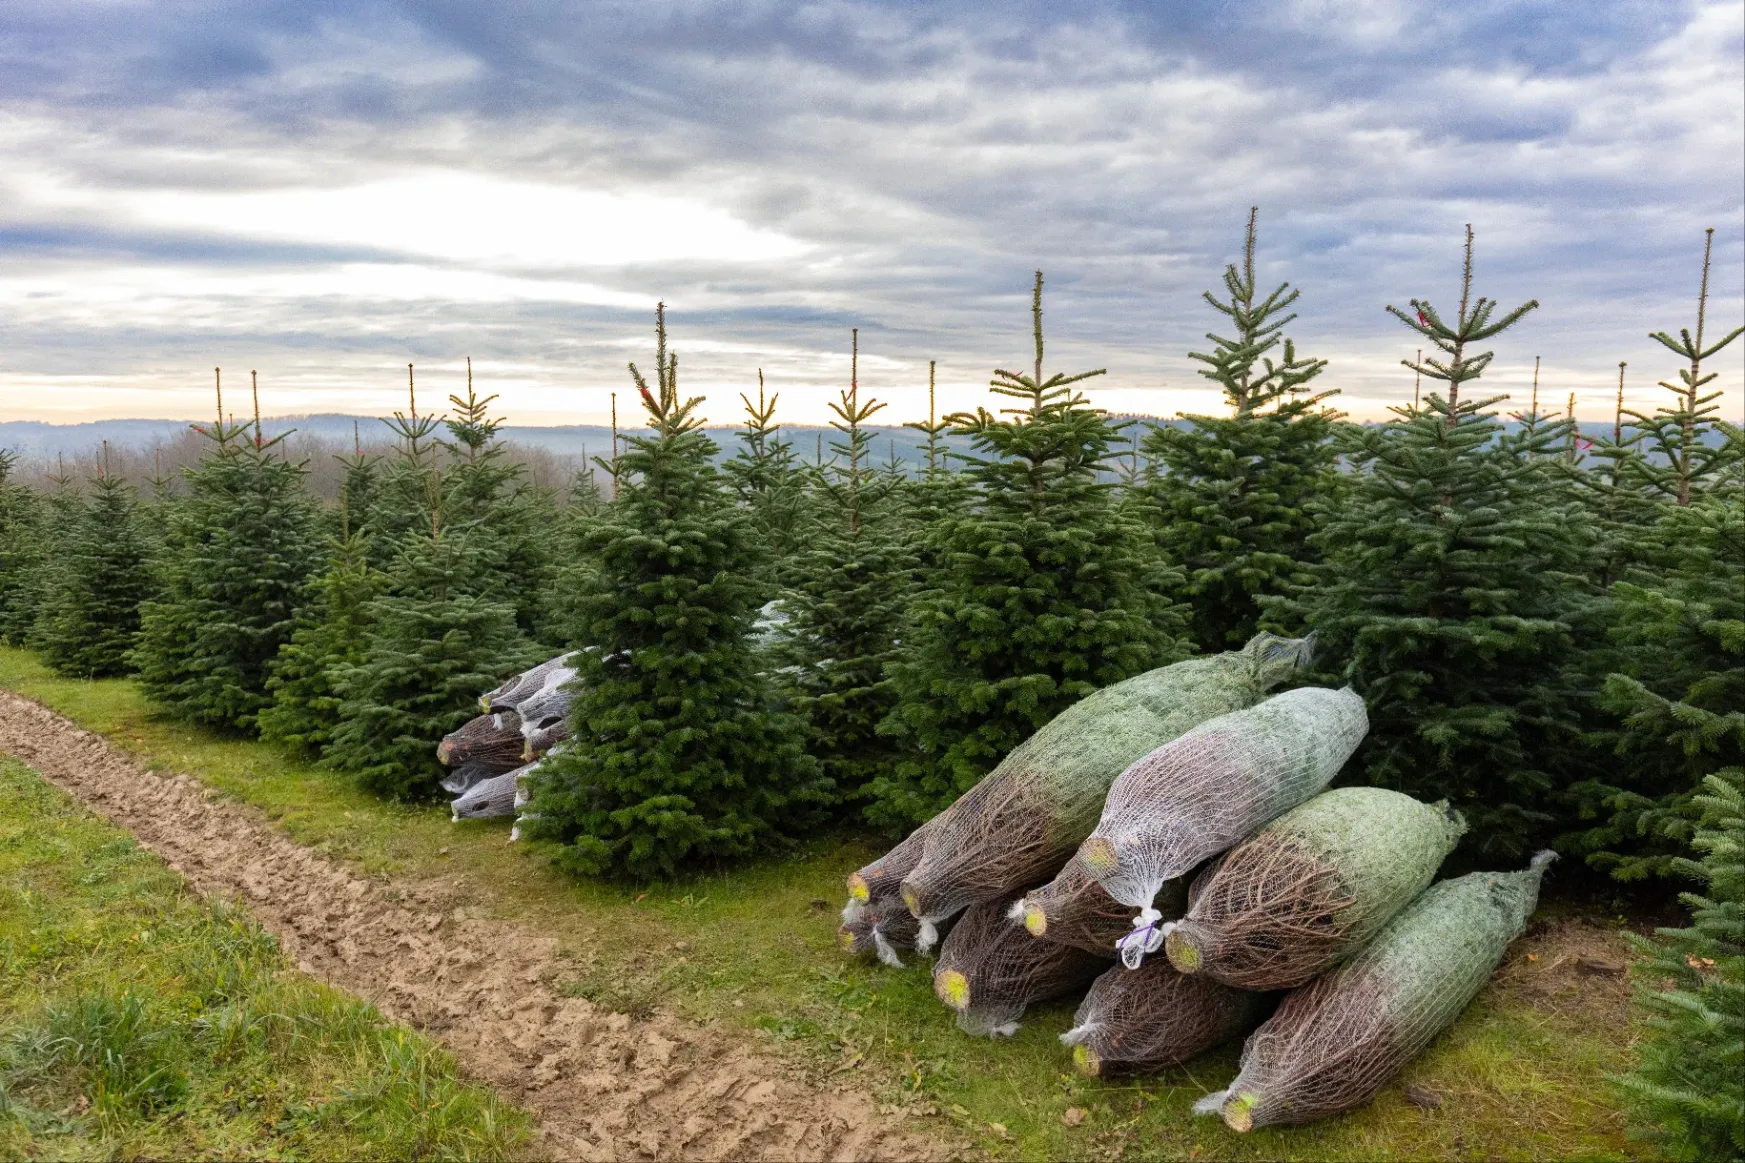 Ürge-Vorsatz Diána klímakutató: minél nagyobb vágott karácsonyfát vegyünk!